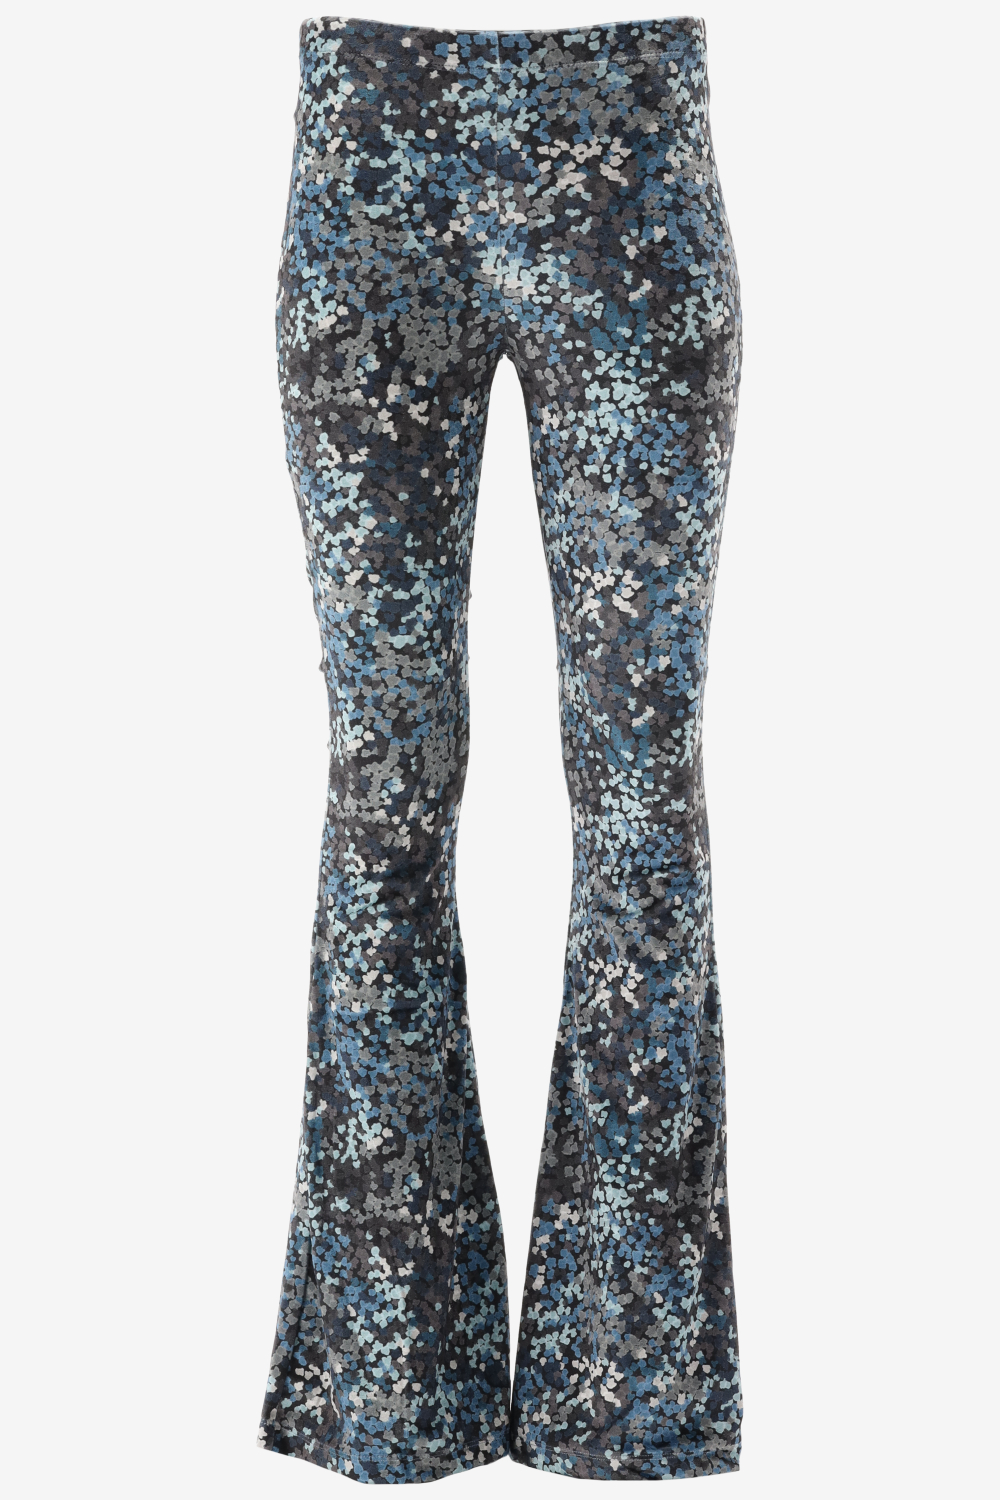 Catwalk Junkie Tr Cloudy Leaves Broeken & Jumpsuits Dames - Jeans - Broekpak - Blauw - Maat XS